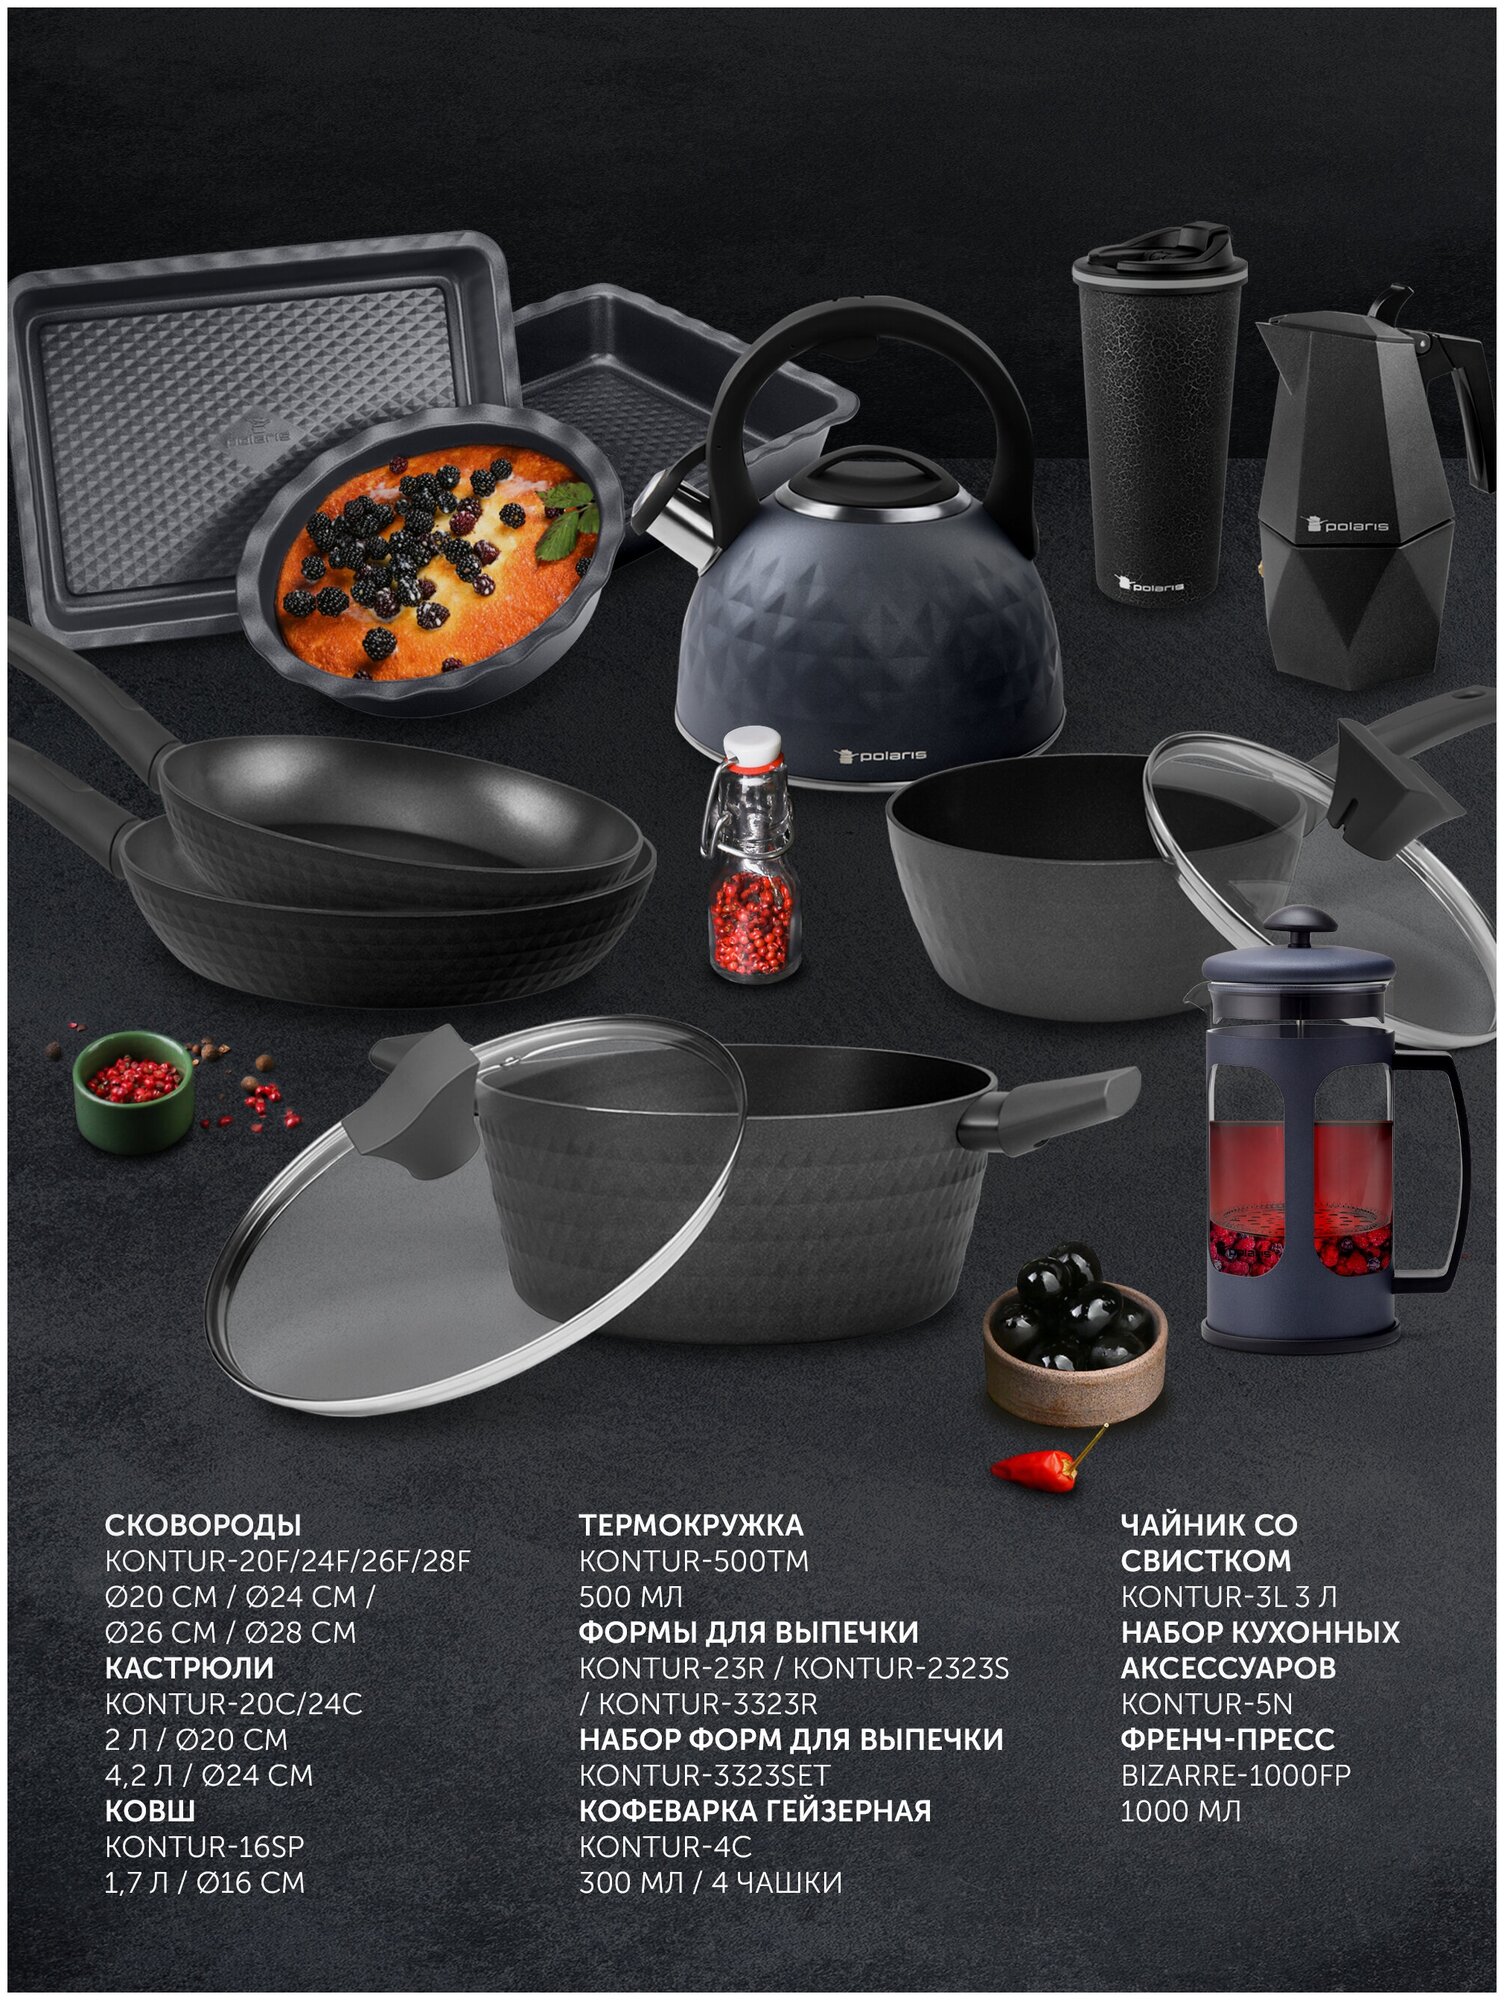 Набор кухонных аксессуаров Polaris Kontur-5N, Серый, 5 предметов - фотография № 4